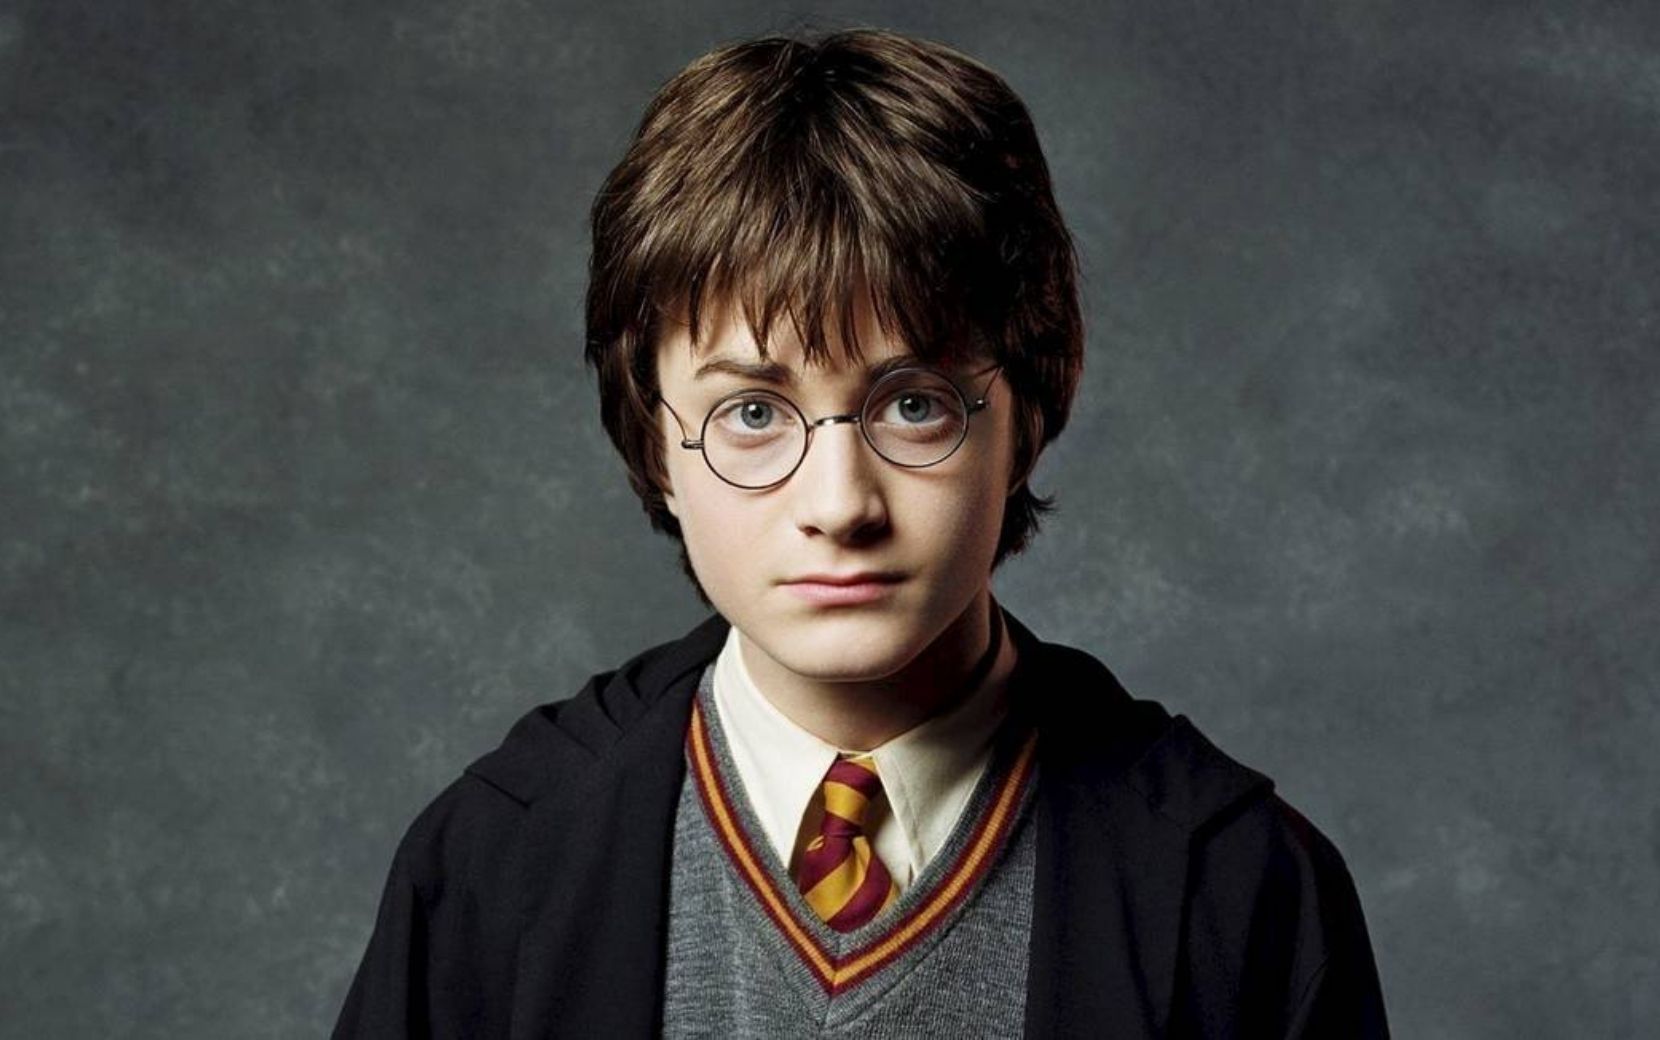 Daniel Radcliffe, estrela de "Harry Potter" revela que sente vergonha de sua atuação nos primeiros filmes